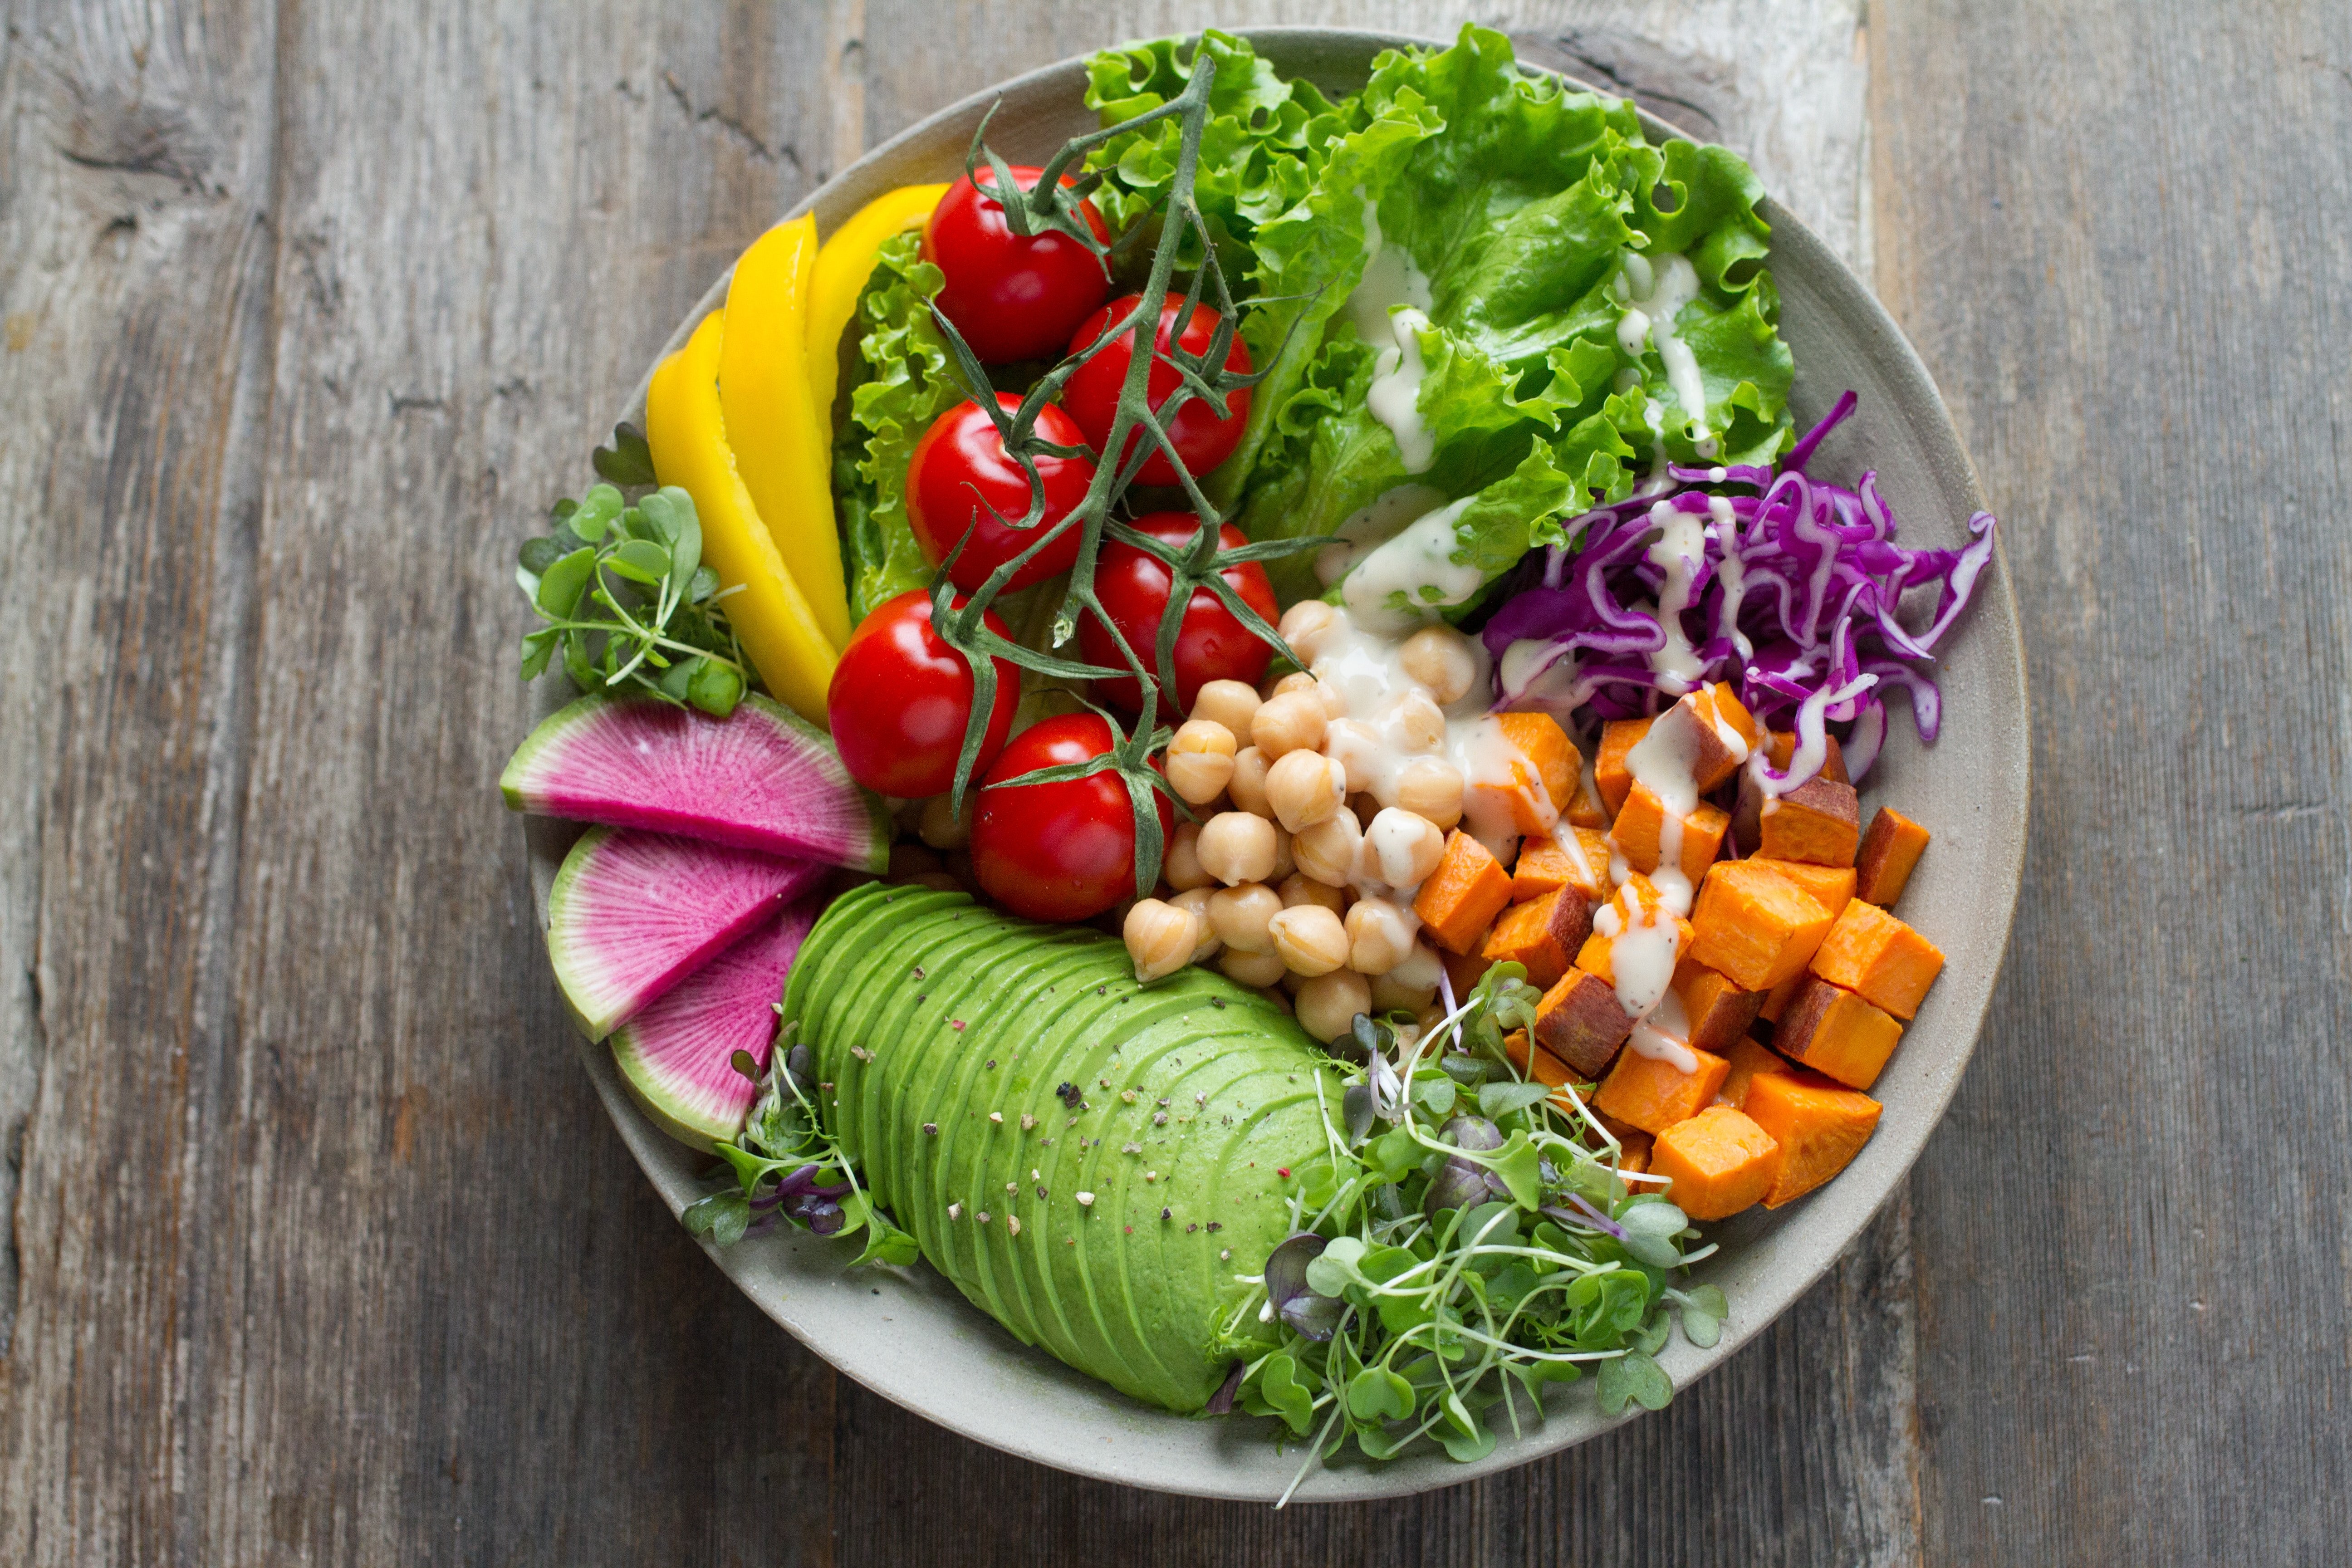 Dieta mediterrània vs vegana: quina és més saludable?